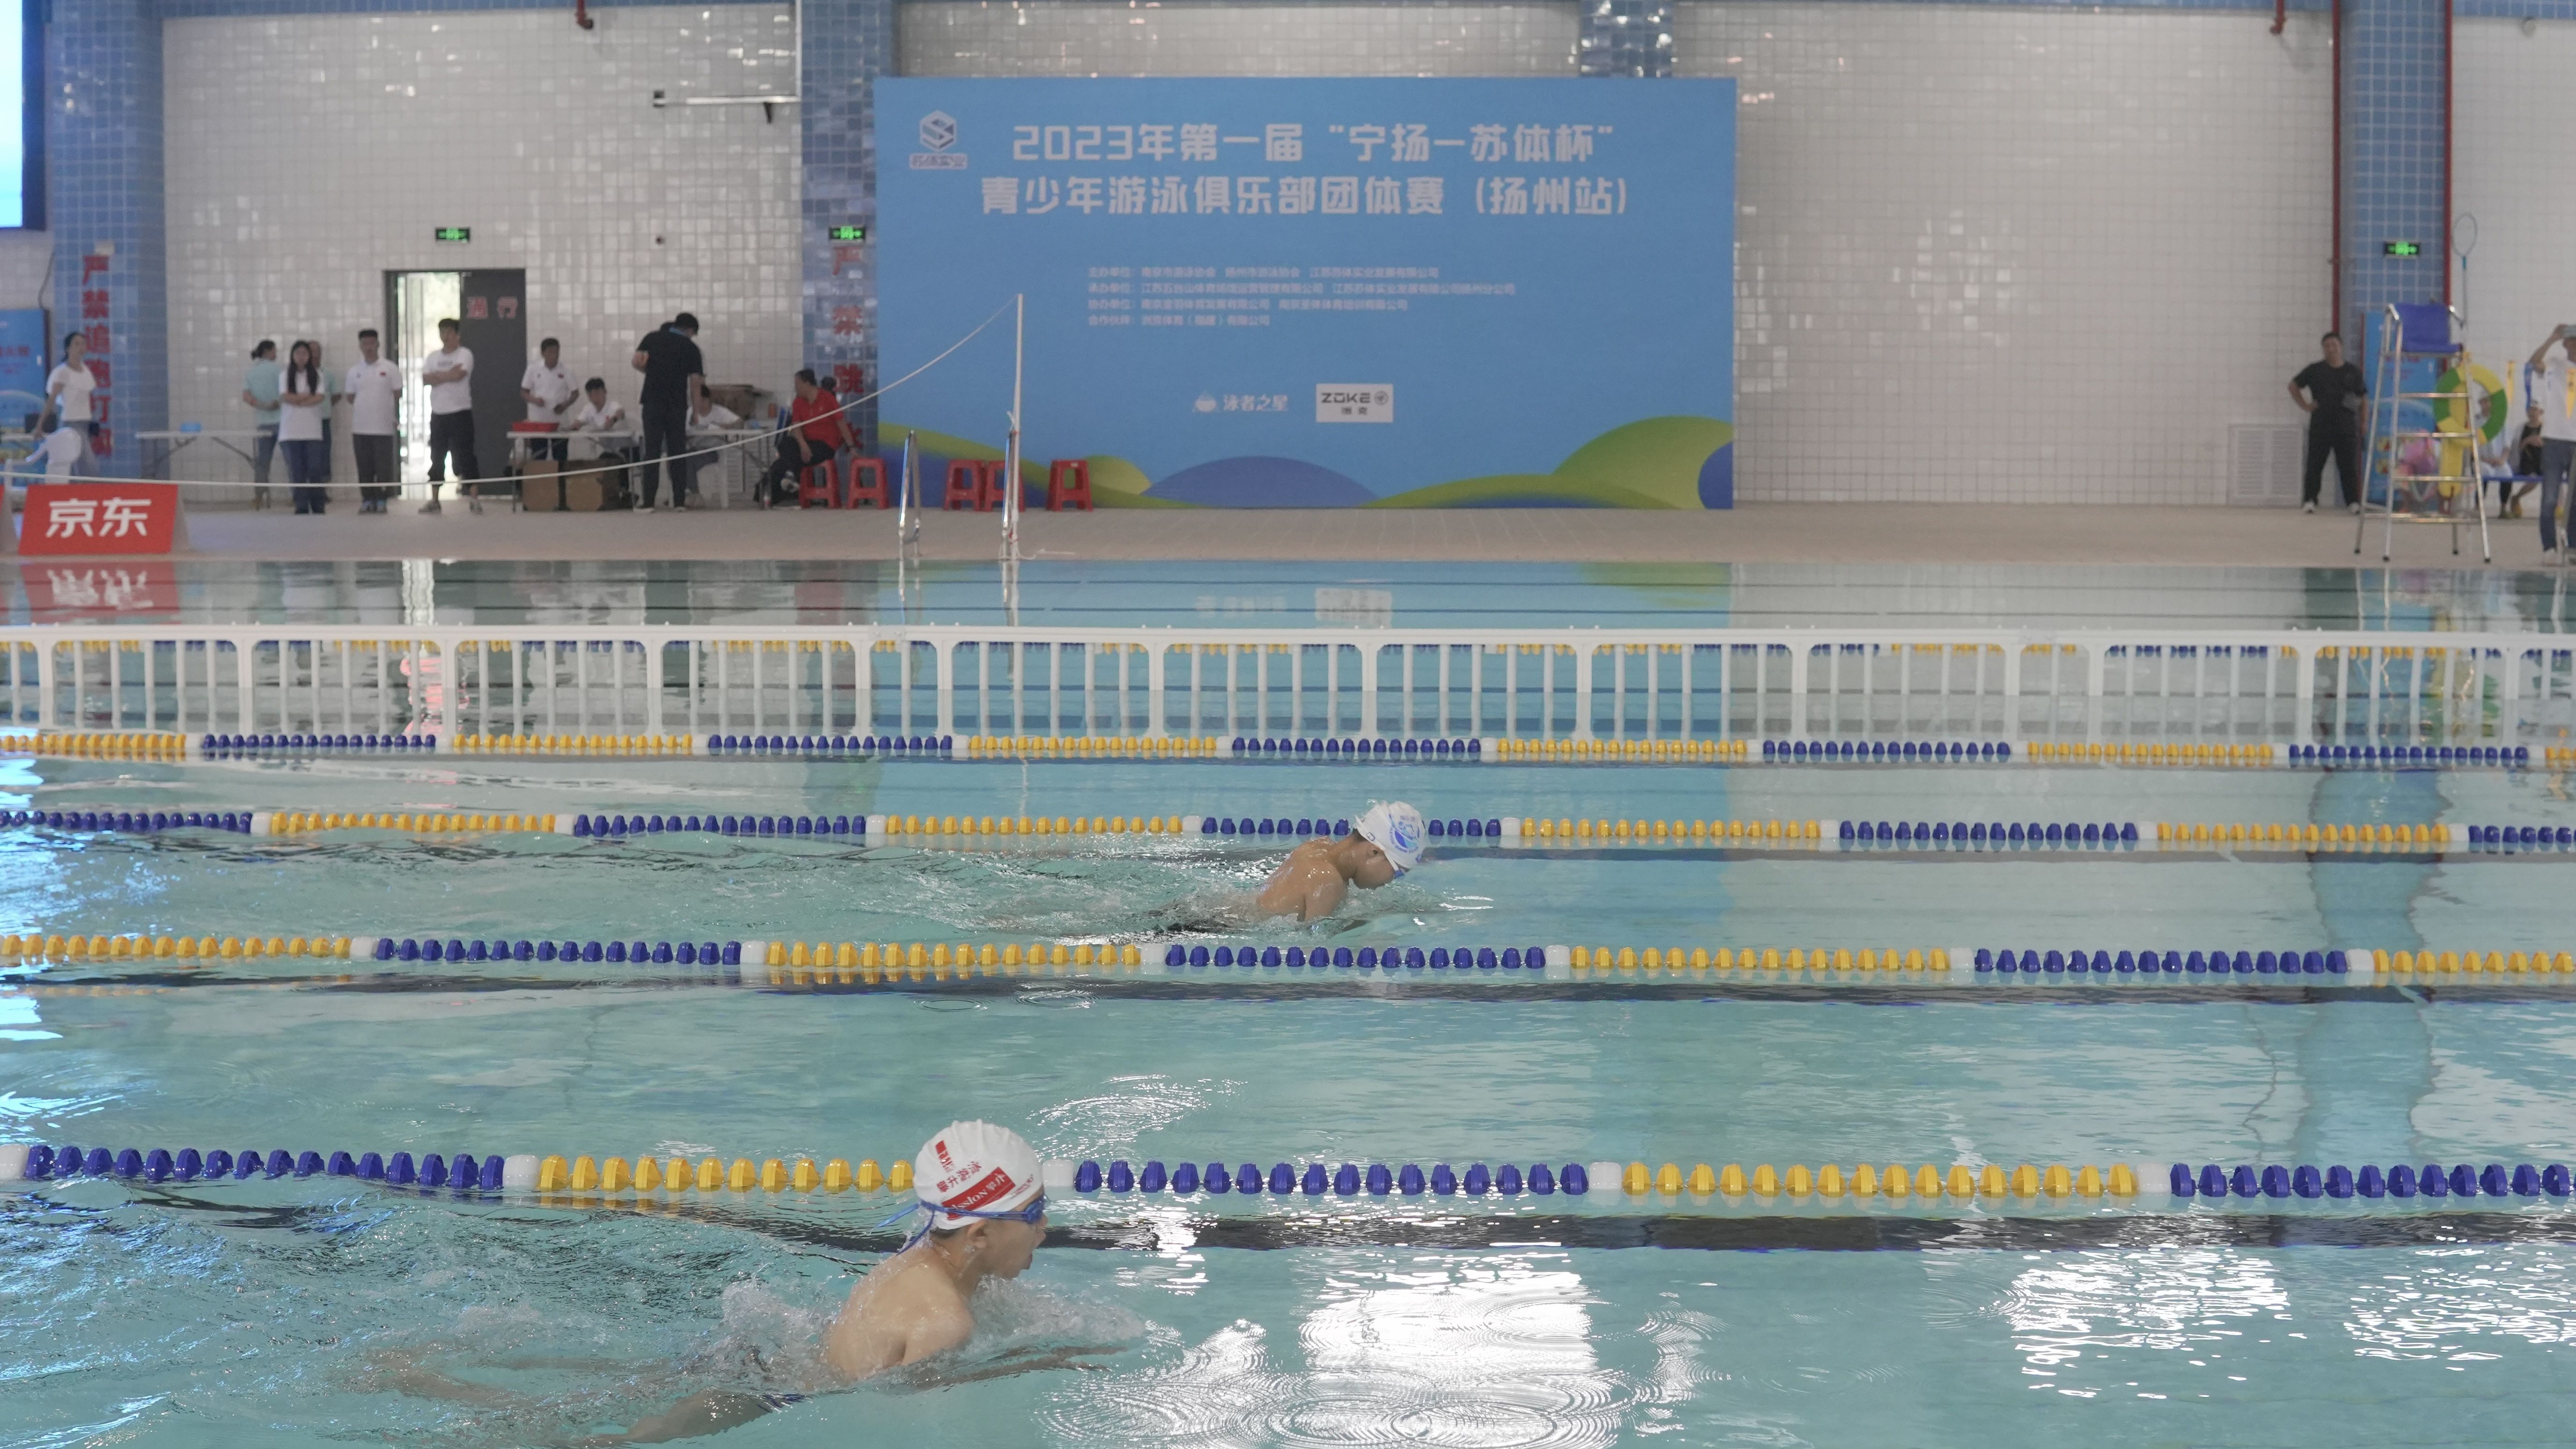 2023年第一届“宁扬—苏体杯”青少年游泳俱乐部团体赛在南邮通达学院游泳馆成功举办